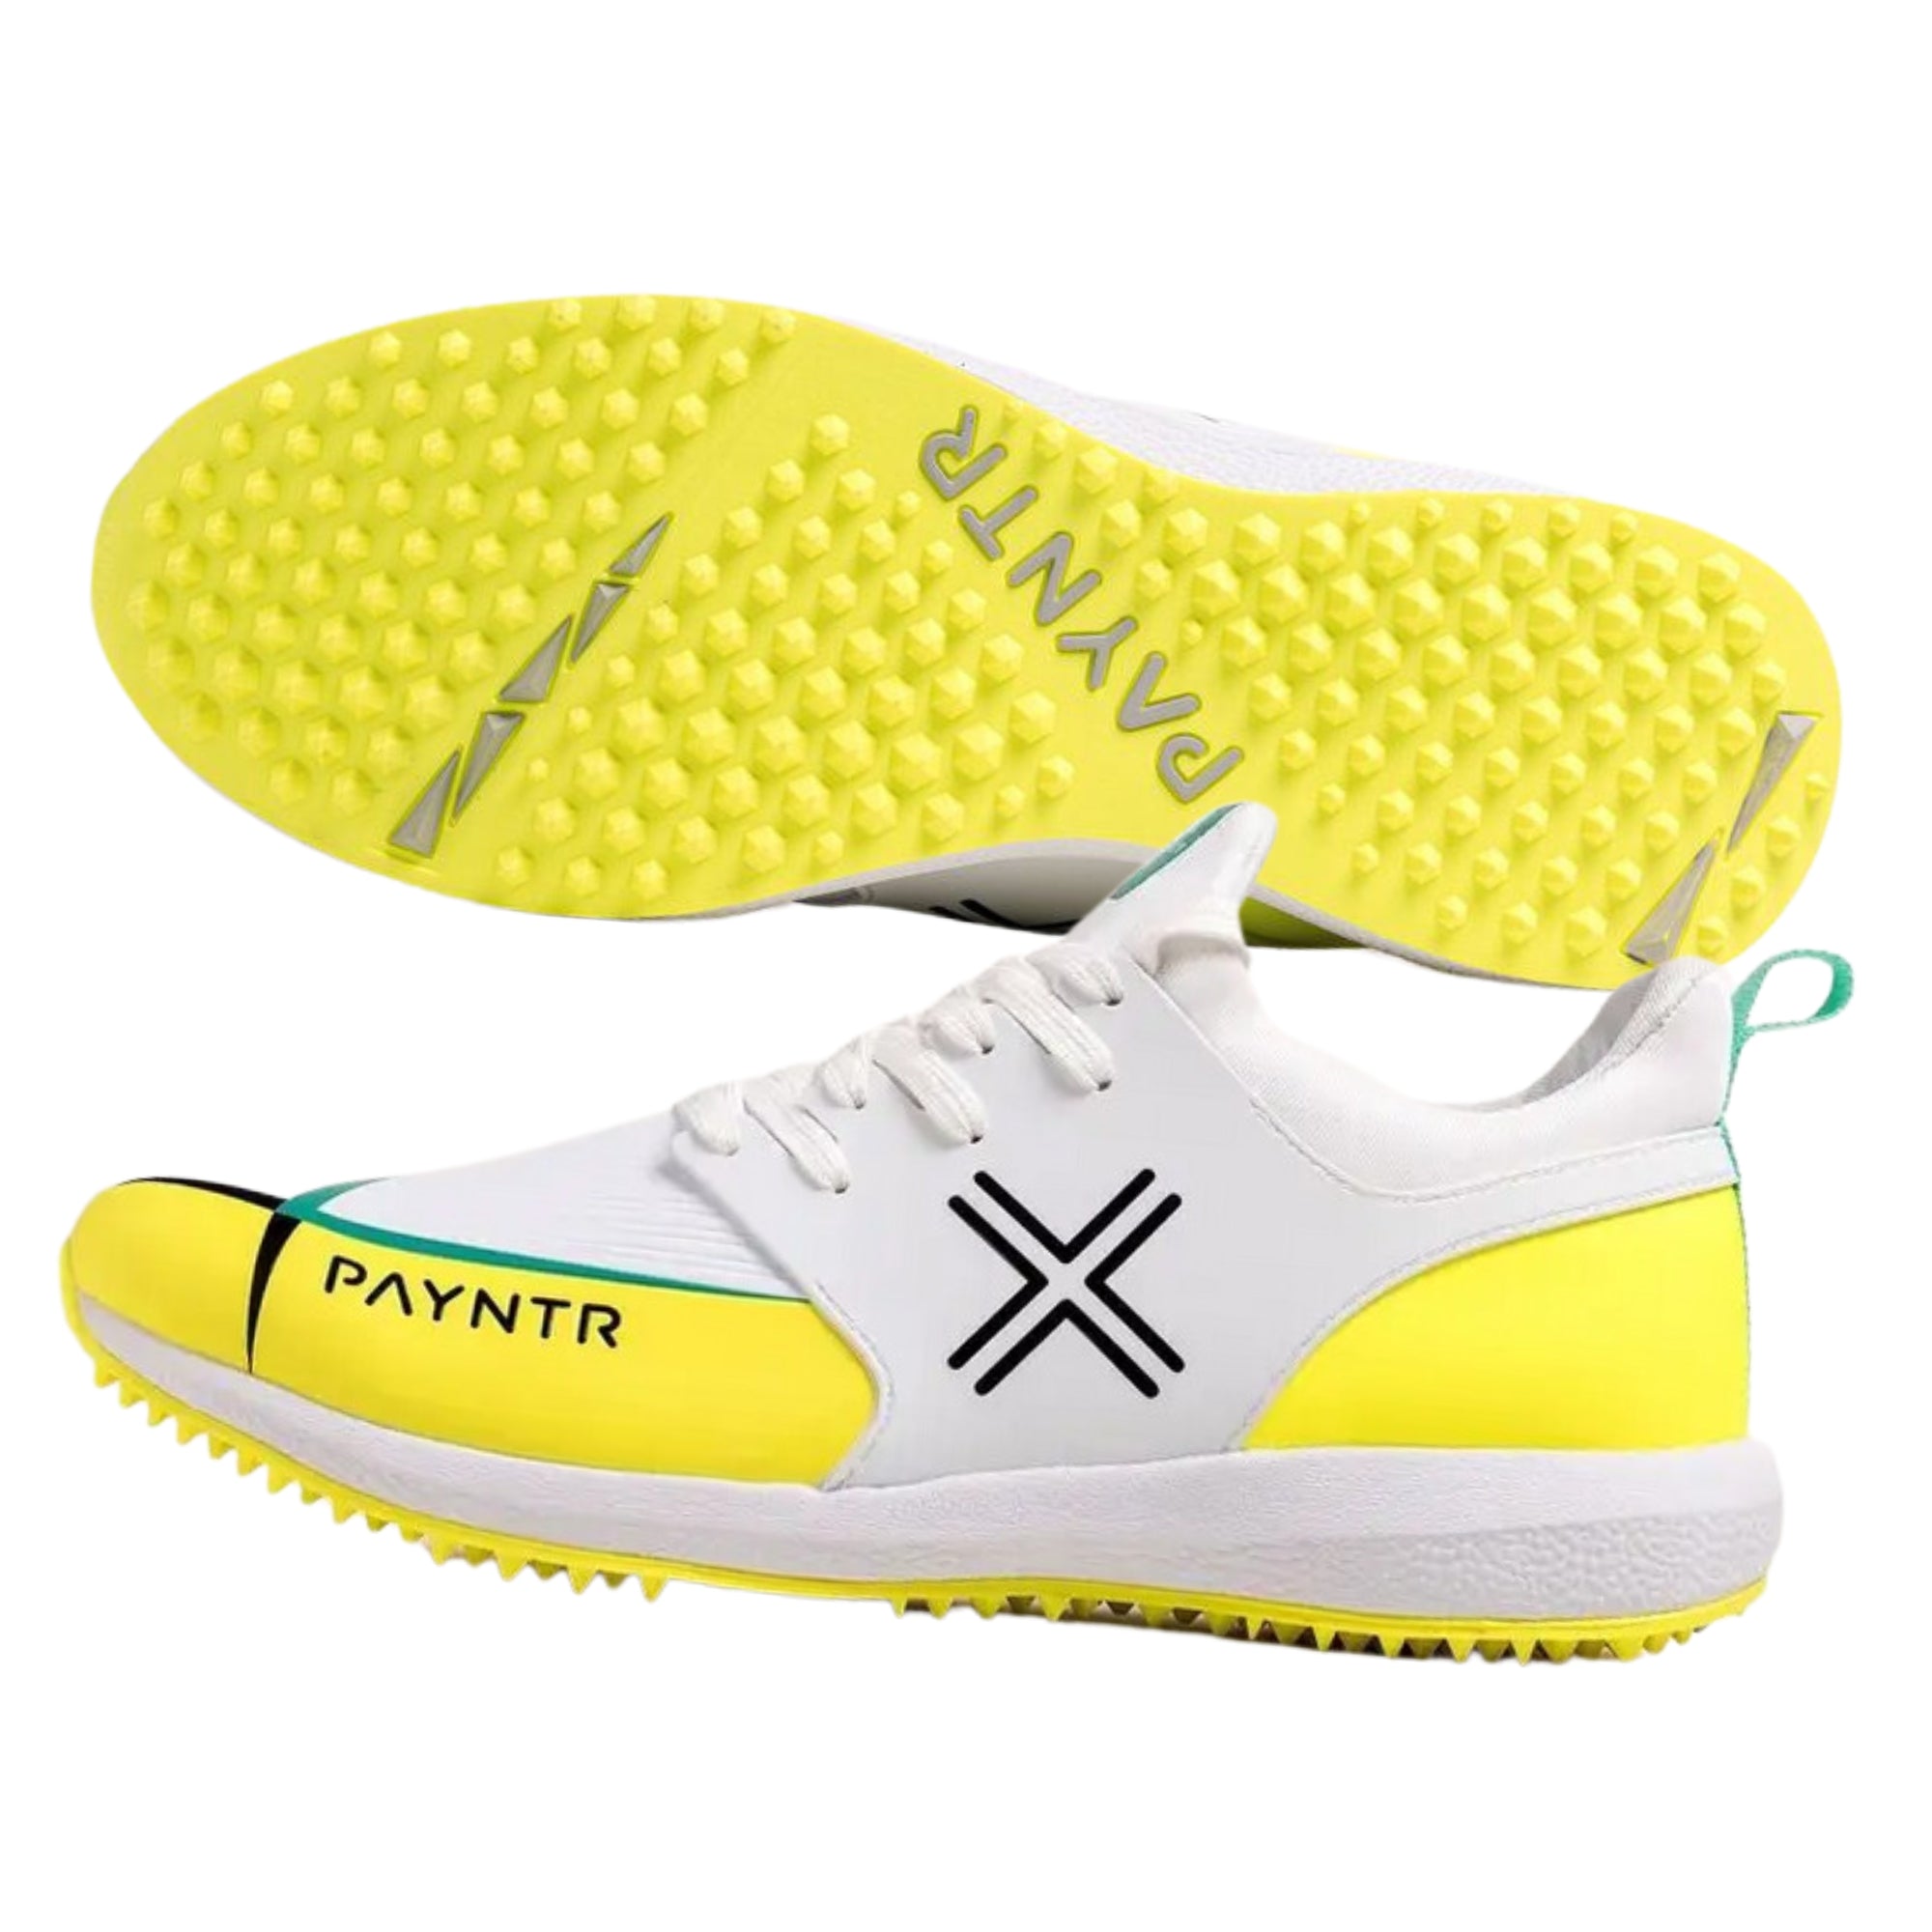 Payntr cricket shoes, Model X MK3 Evo Pimple - White/Yellow